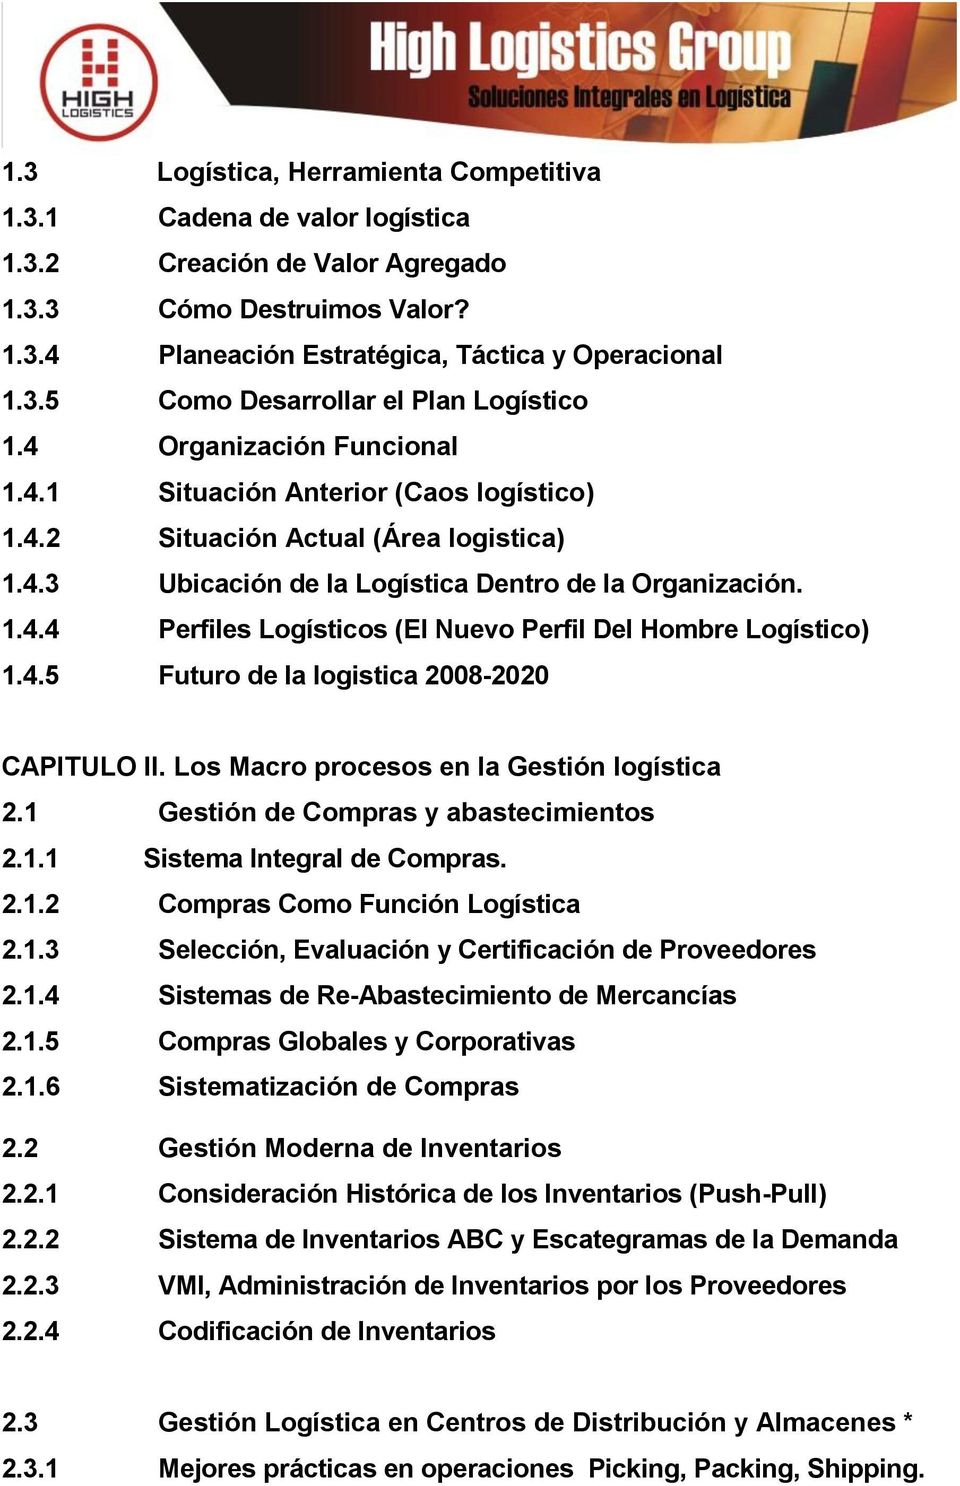 4.5 Futuro de la logistica 2008-2020 CAPITULO II. Los Macro procesos en la Gestión logística 2.1 Gestión de Compras y abastecimientos 2.1.1 Sistema Integral de Compras. 2.1.2 Compras Como Función Logística 2.